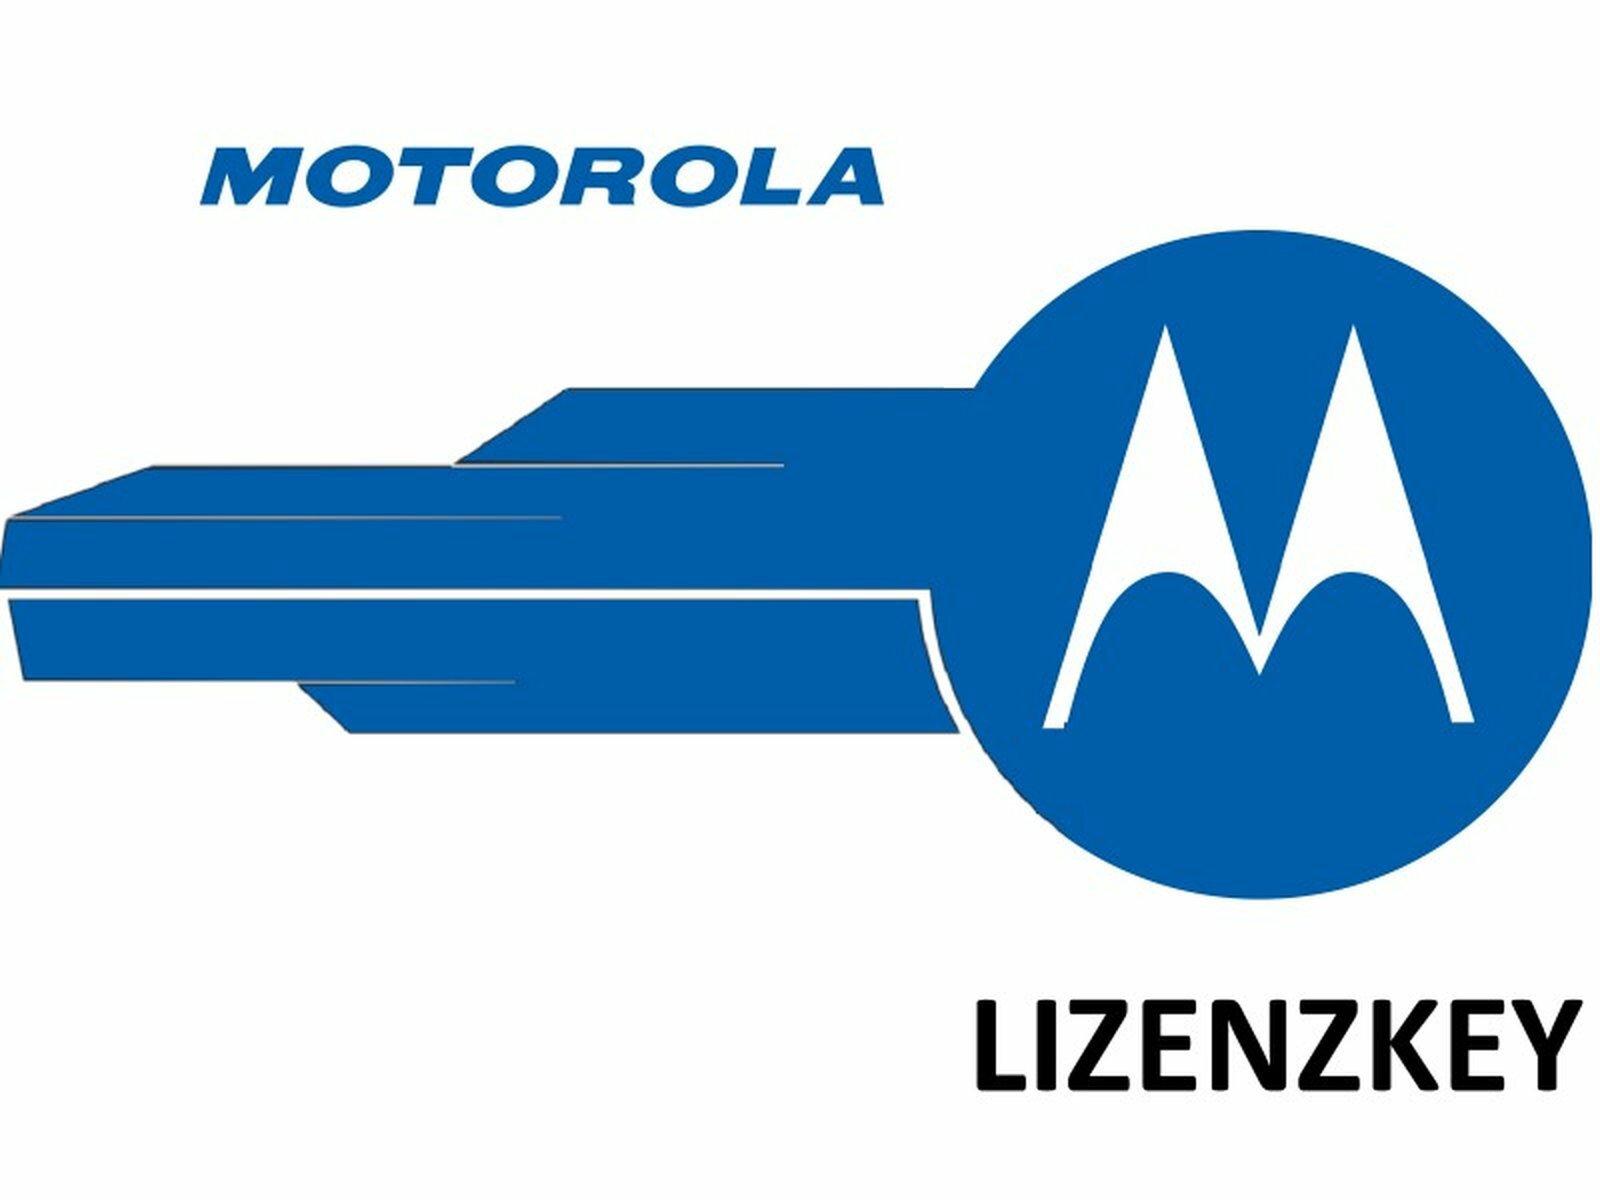 Motorola HKVN4037A IMPRES Battery Fleet Management EMEA Entitlement ID